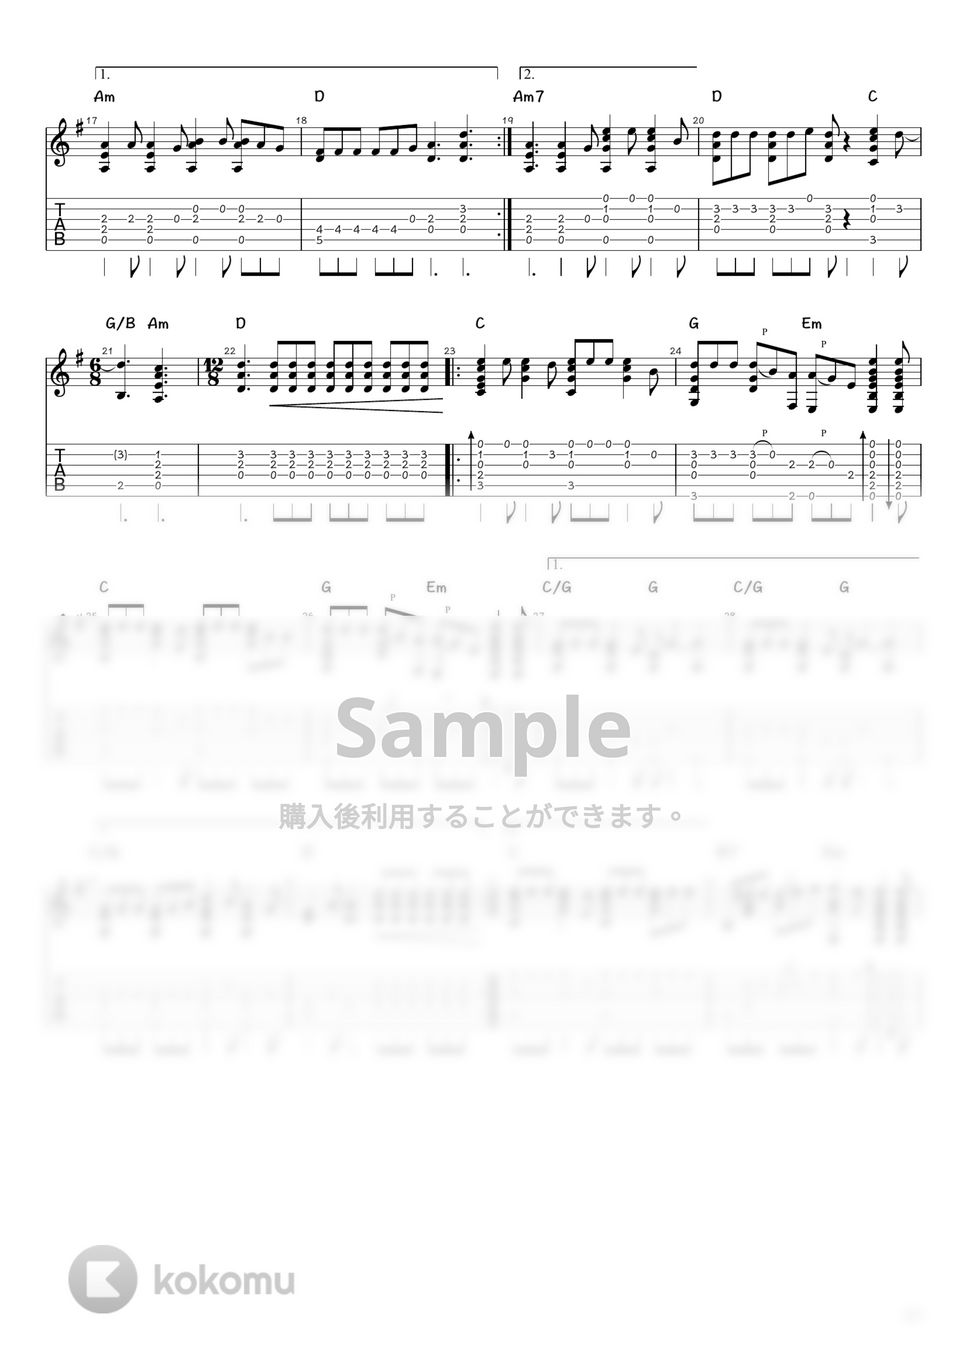 尾崎豊 - 卒業 (ソロギター / タブ譜) by 井上さとみ